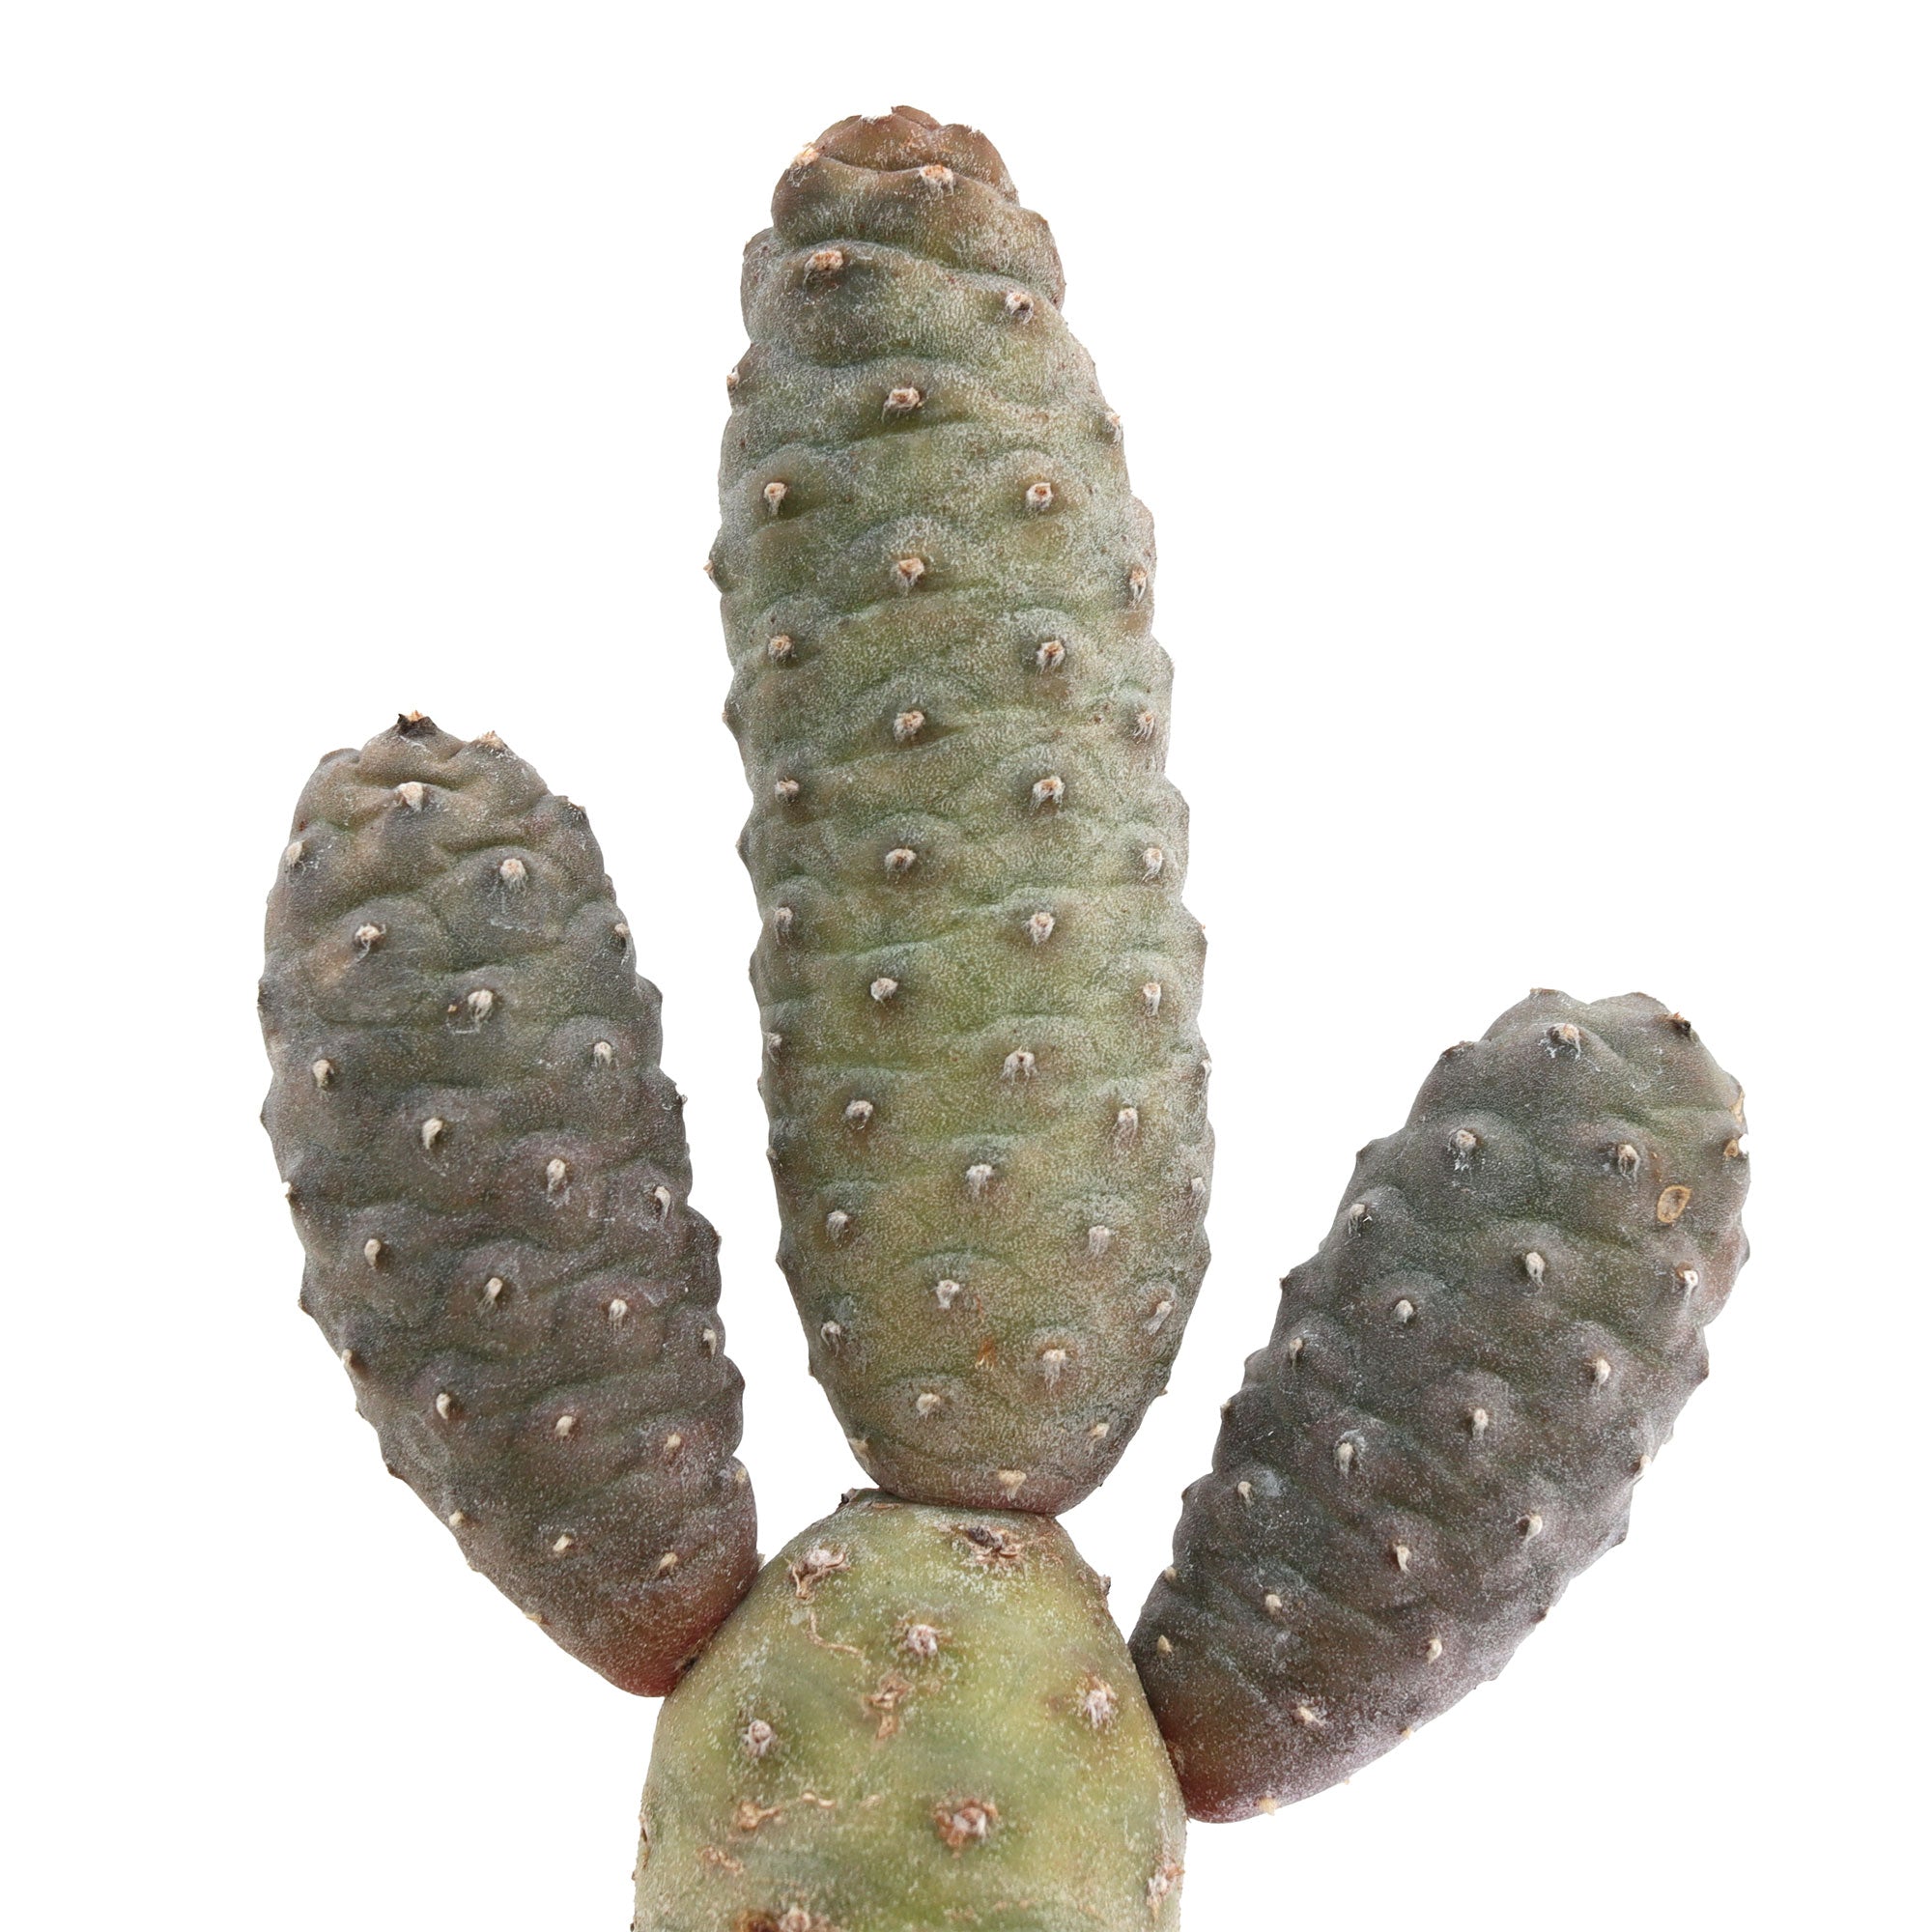 Tephrocactus articulatus var. inermis 'Pine Cone Cactus'